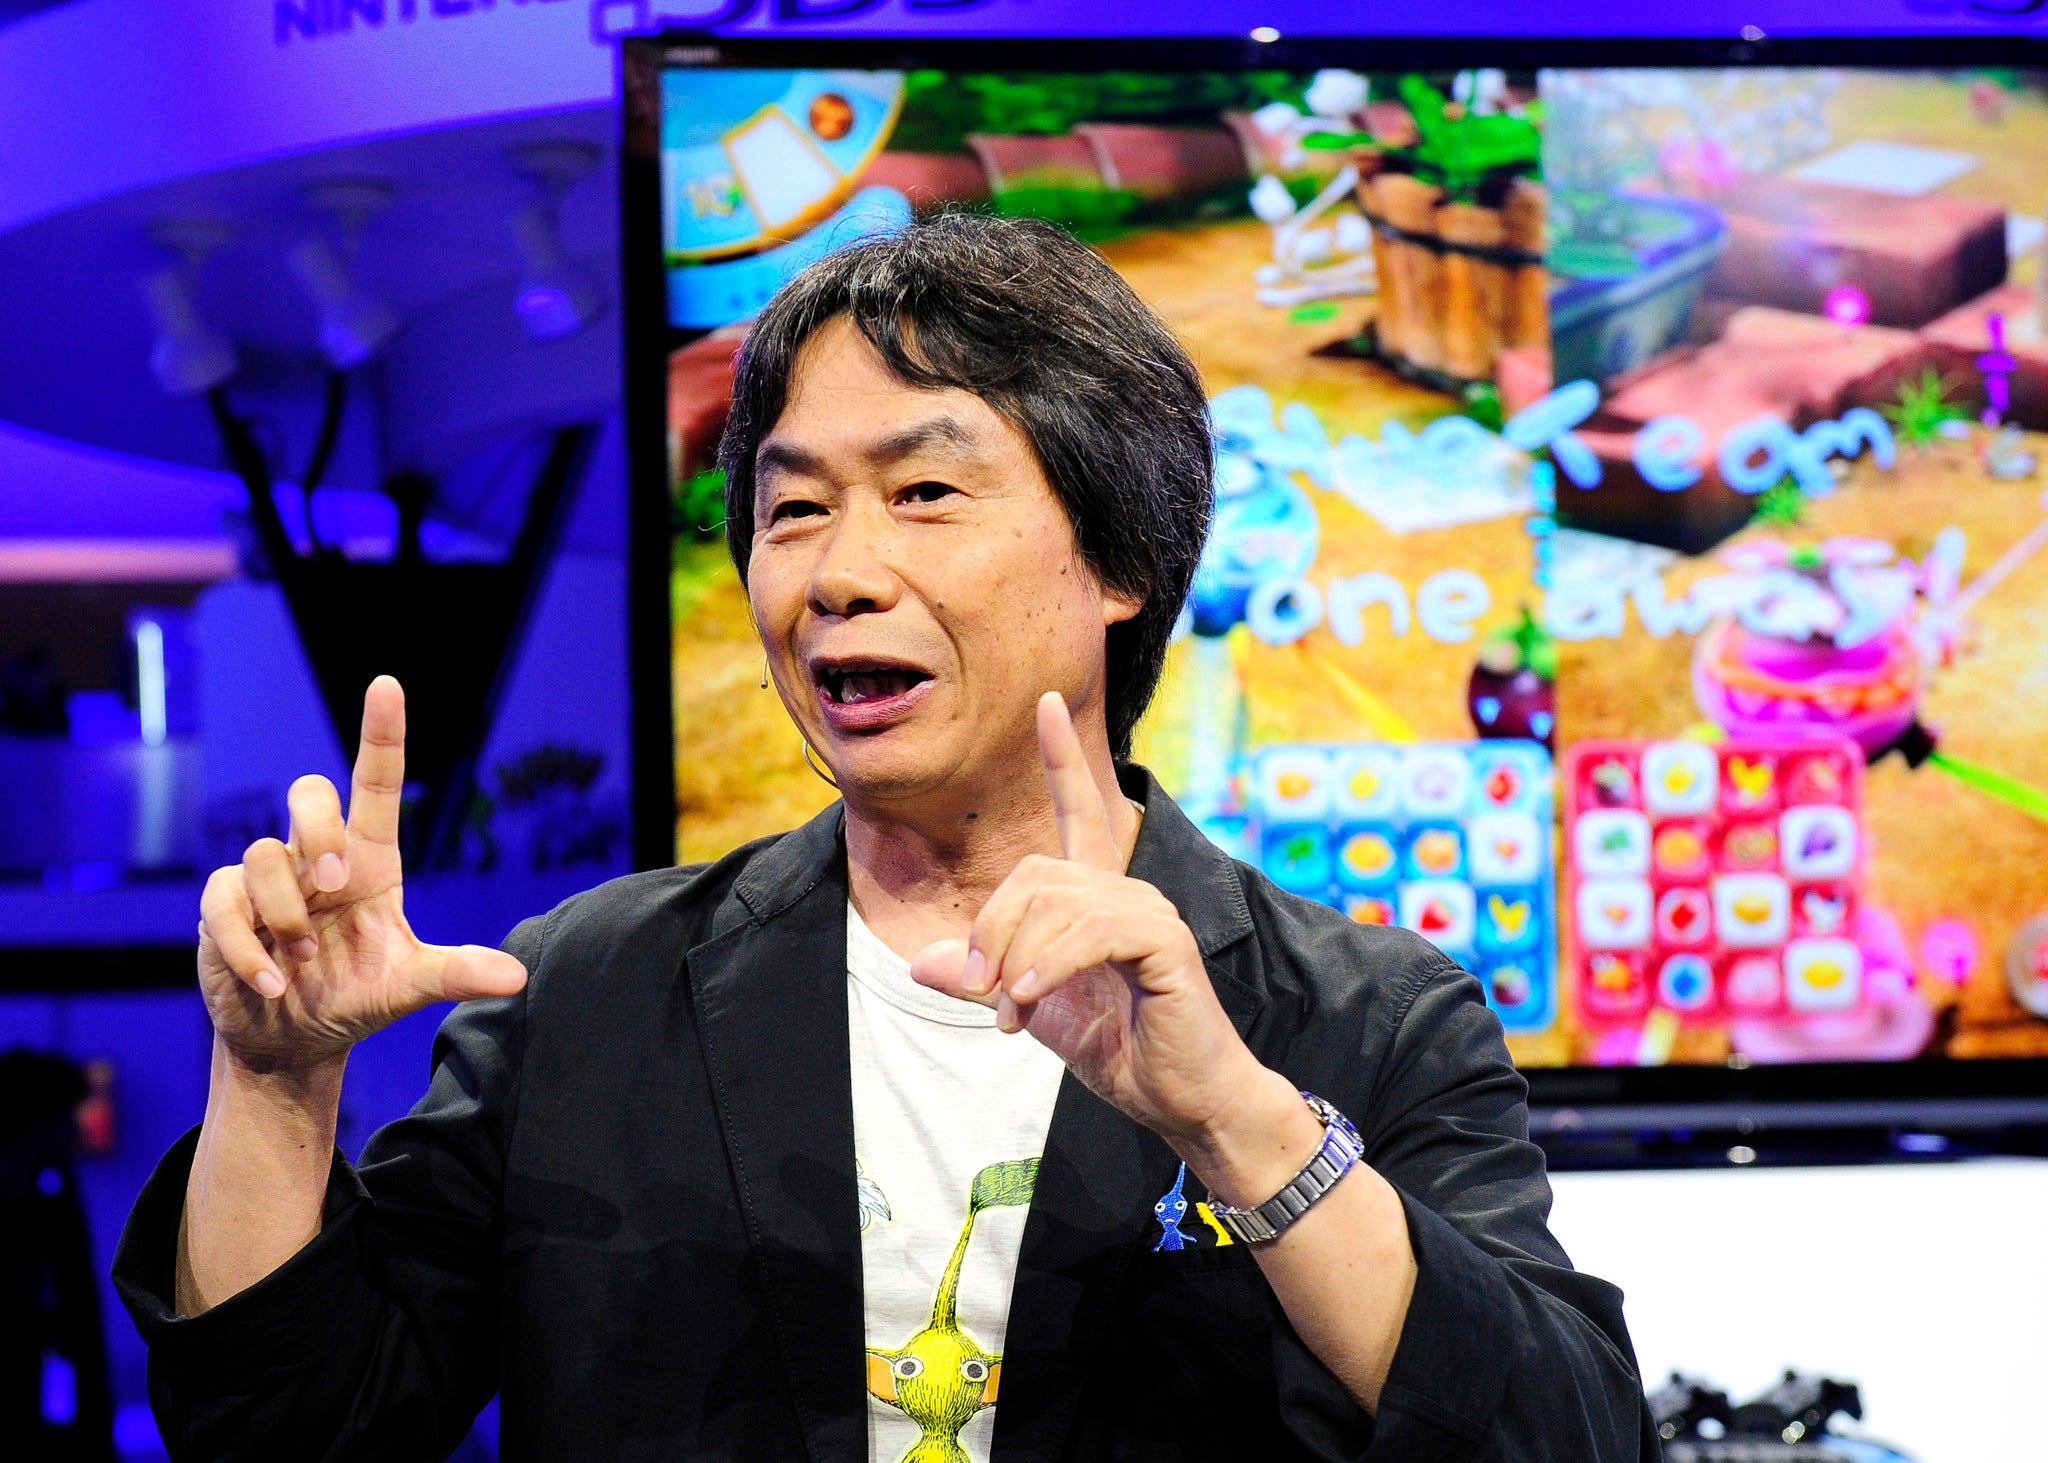 Shigeru Miyamoto speaking at the Pikmin 3 unveiling at E3 in 2013.